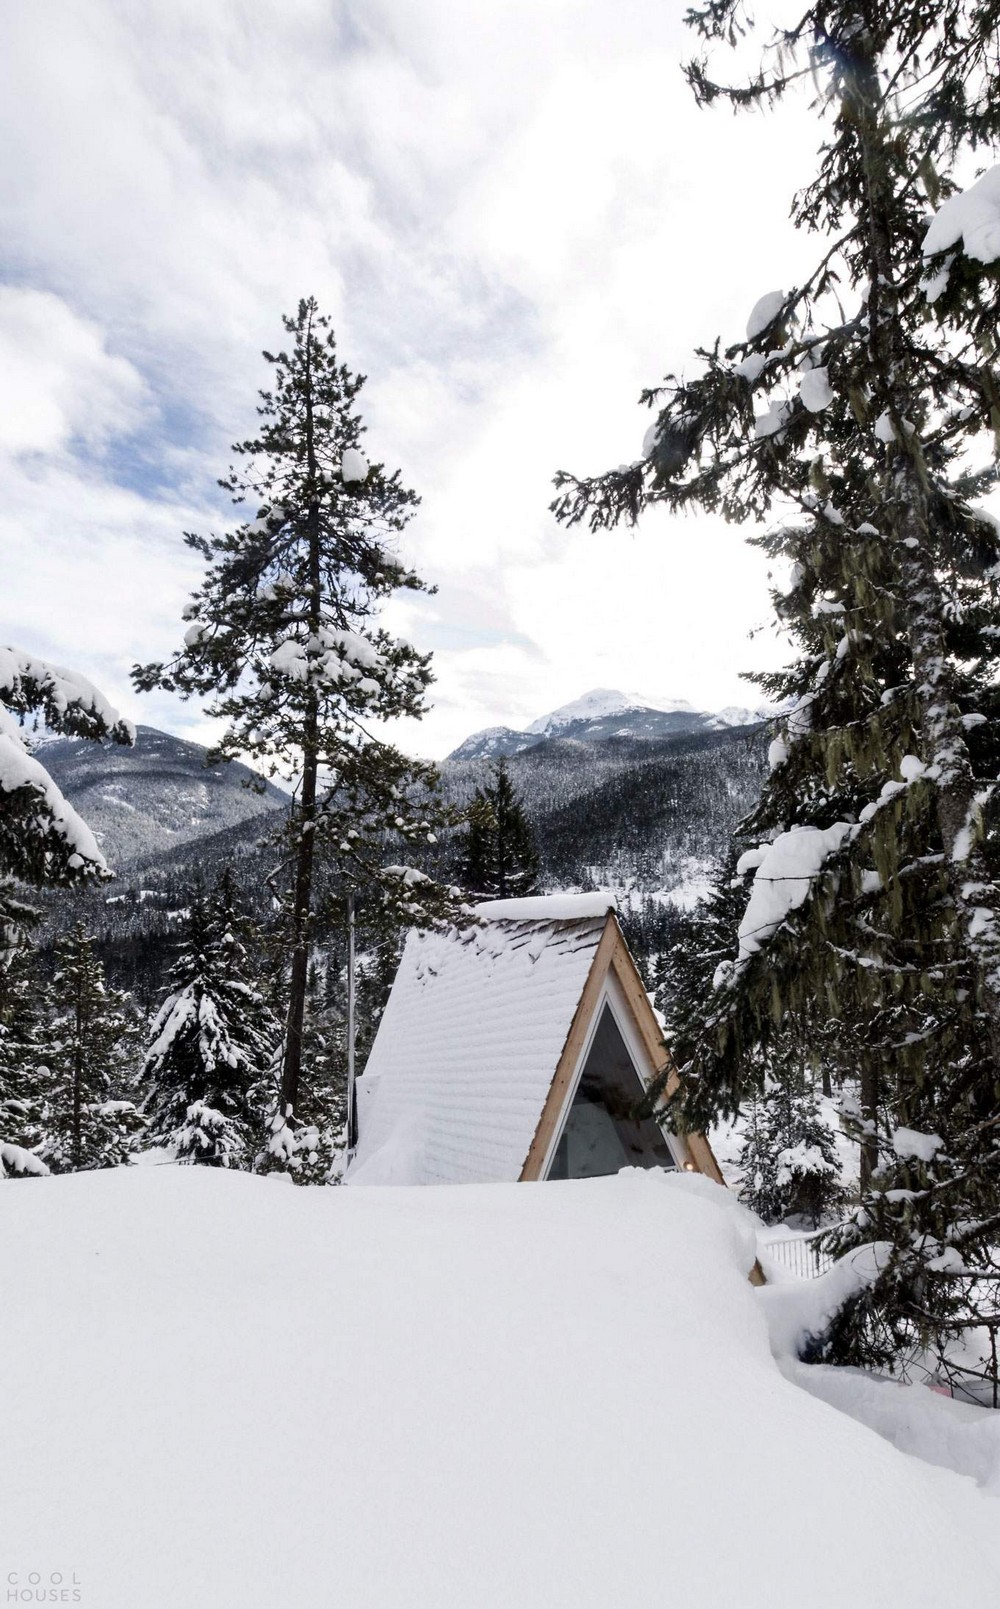 Дом для семьи сноубордистов в горах Канады